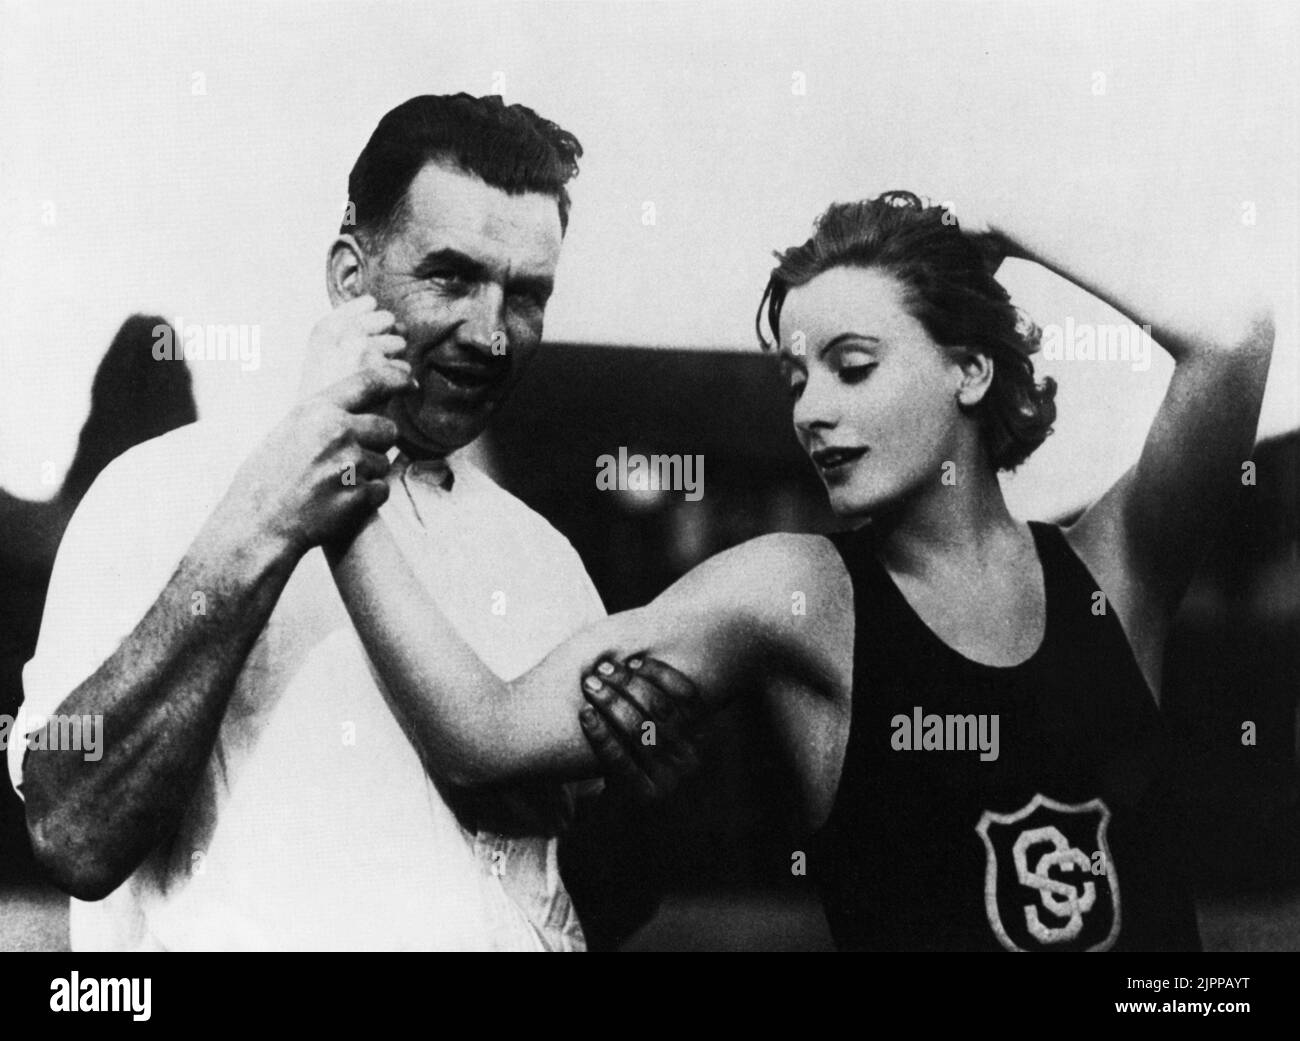 1925 , ÉTATS-UNIS : L'actrice GRETA GARBO ( 1905 - 1990 ) dans une photo pubblicity avec le théacher sportif de l'Université de Californie du Sud - FILM - CINÉMA - portrait - ritratto - muscoli - muscles - biceps - bicipiti - canottiera - braccio - bras - fitness ---- Archivio GBB Banque D'Images